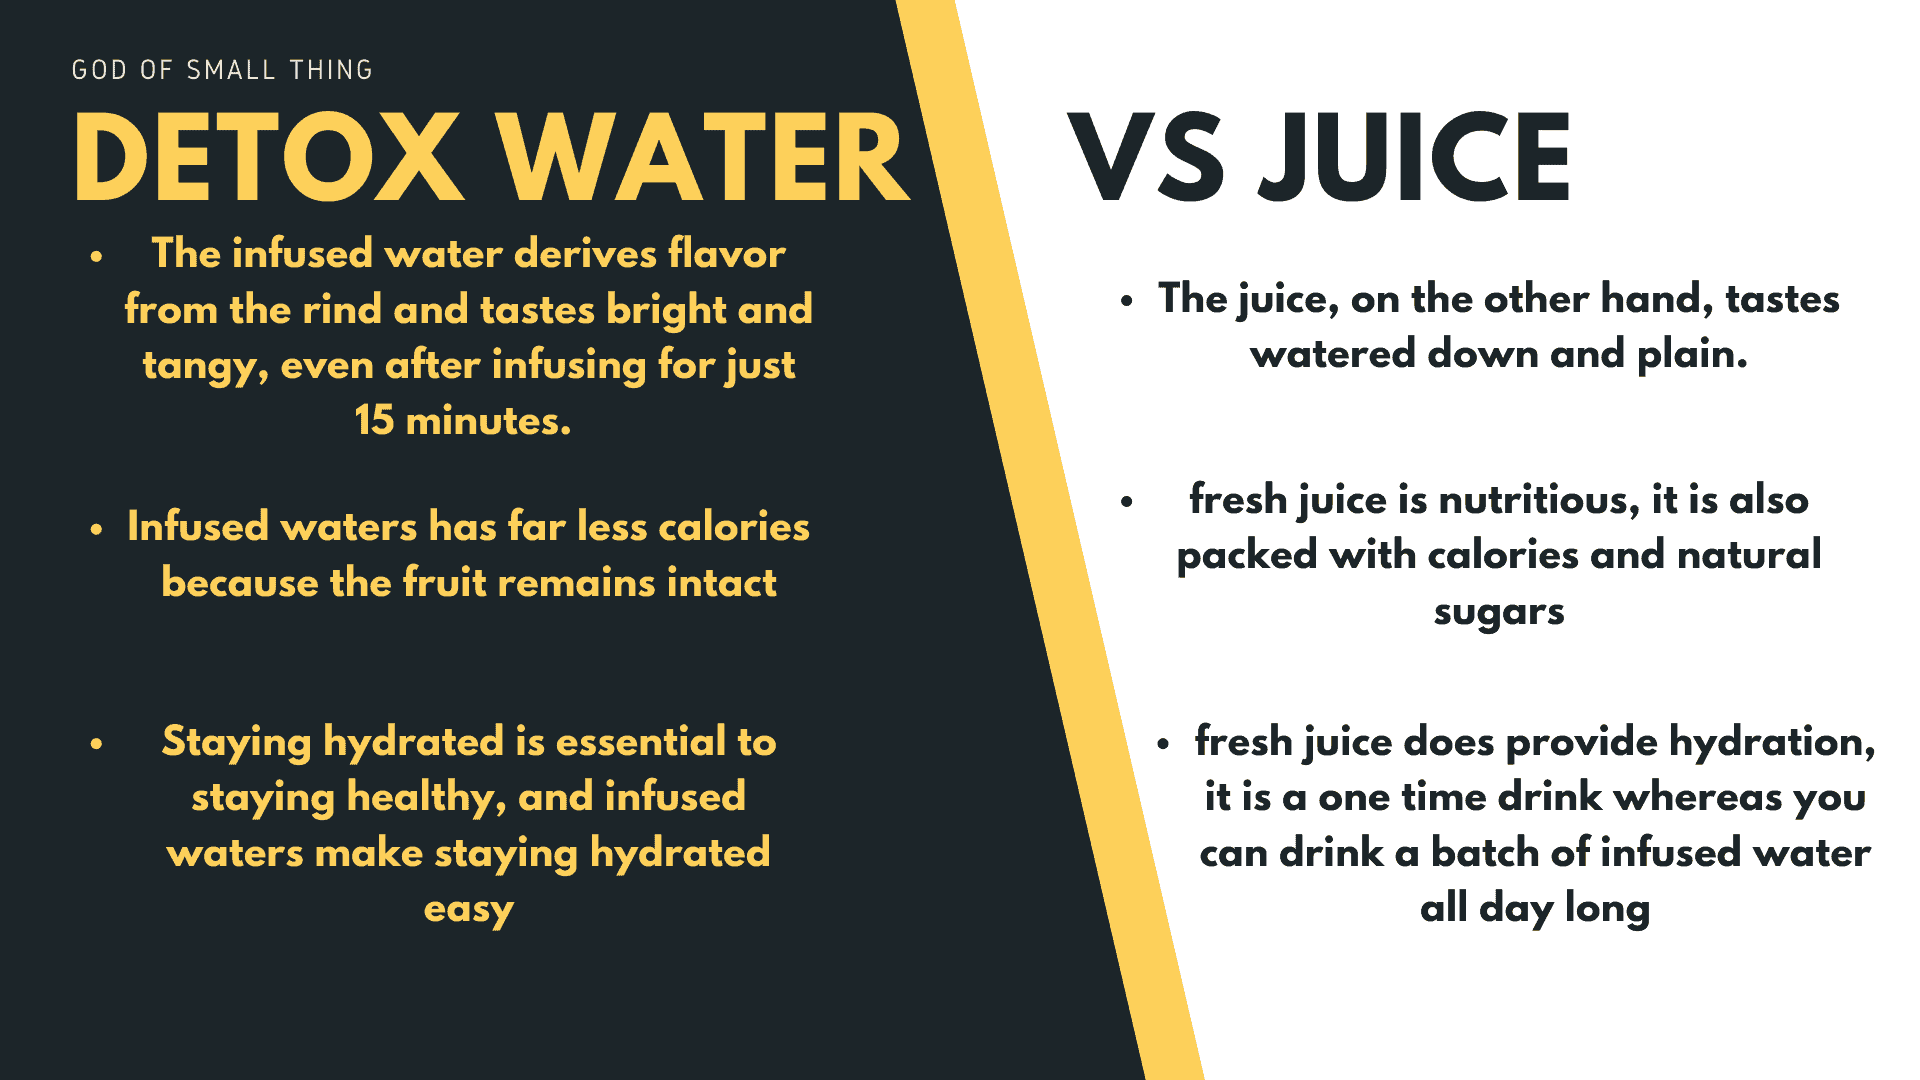 Benefits of Detox Water Versus Juice